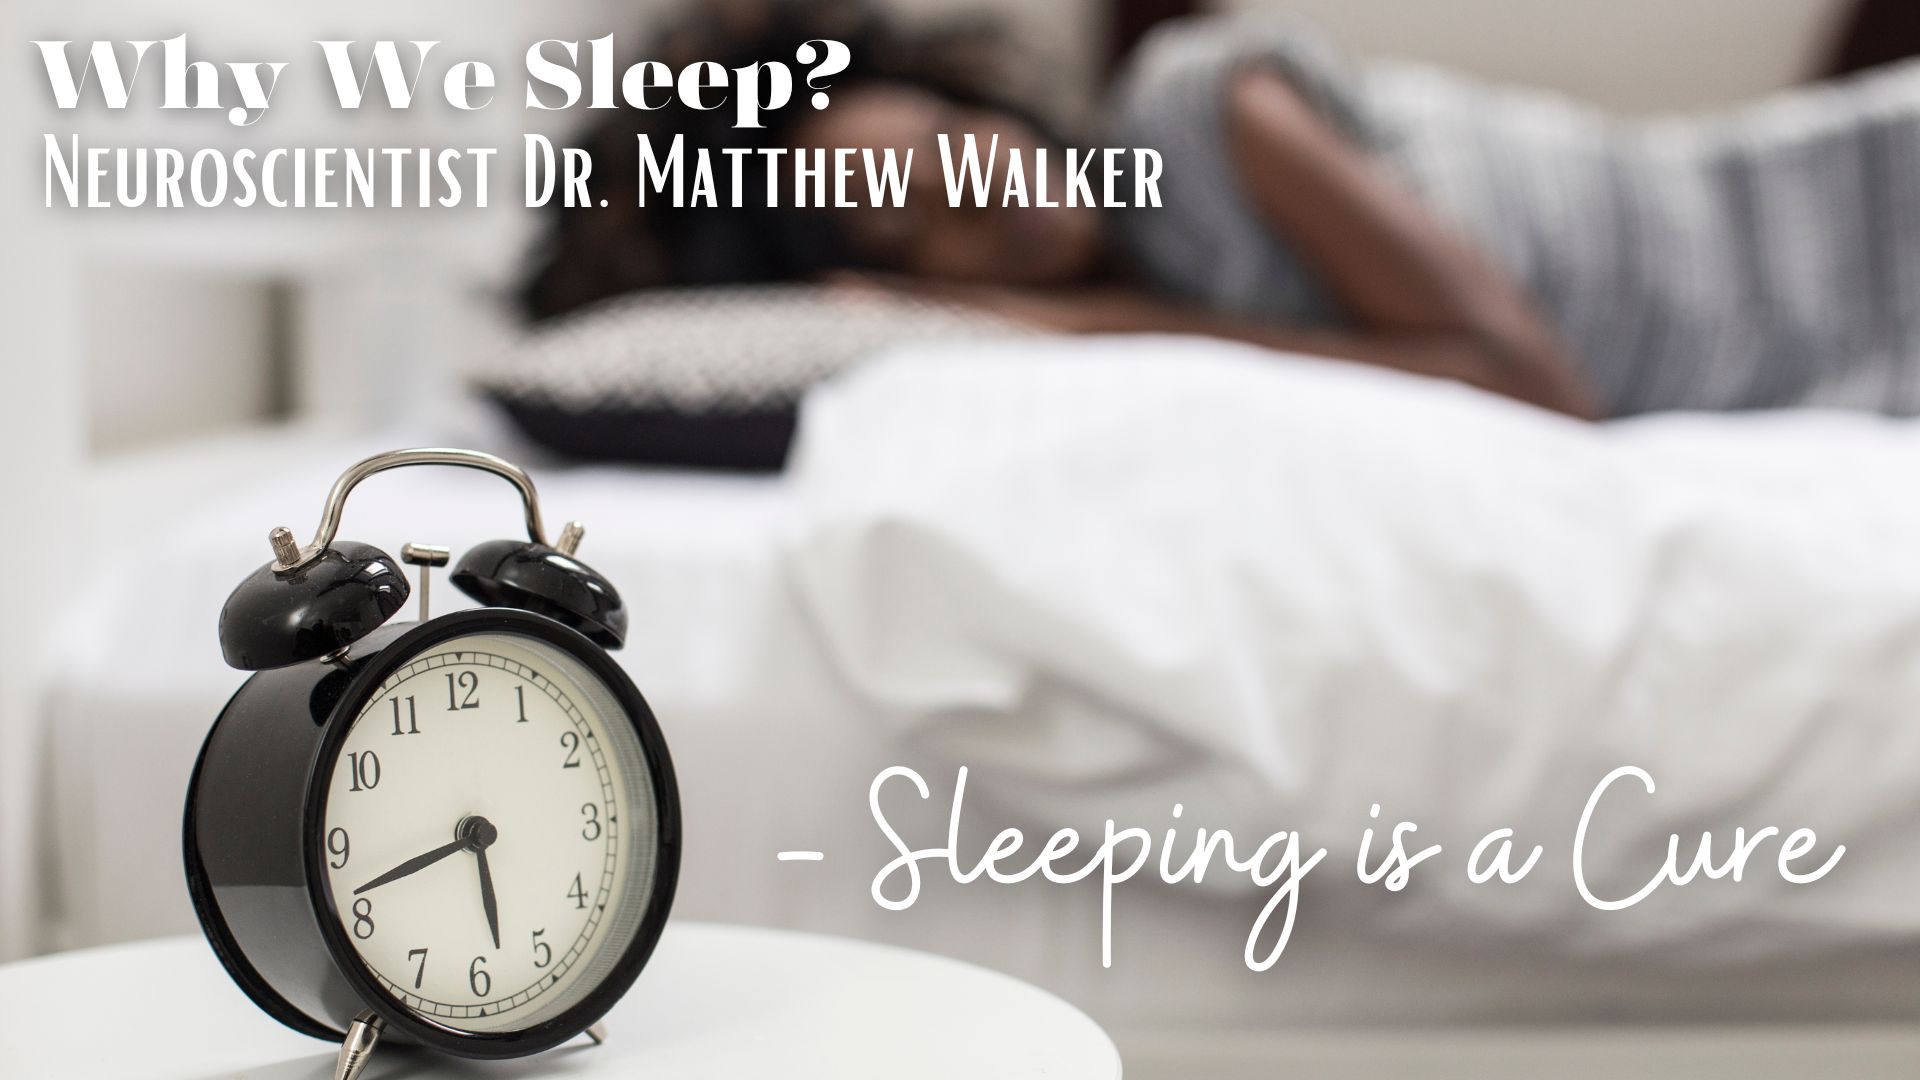 Why We Sleep by Neuroscientist Dr. Matthew Walker